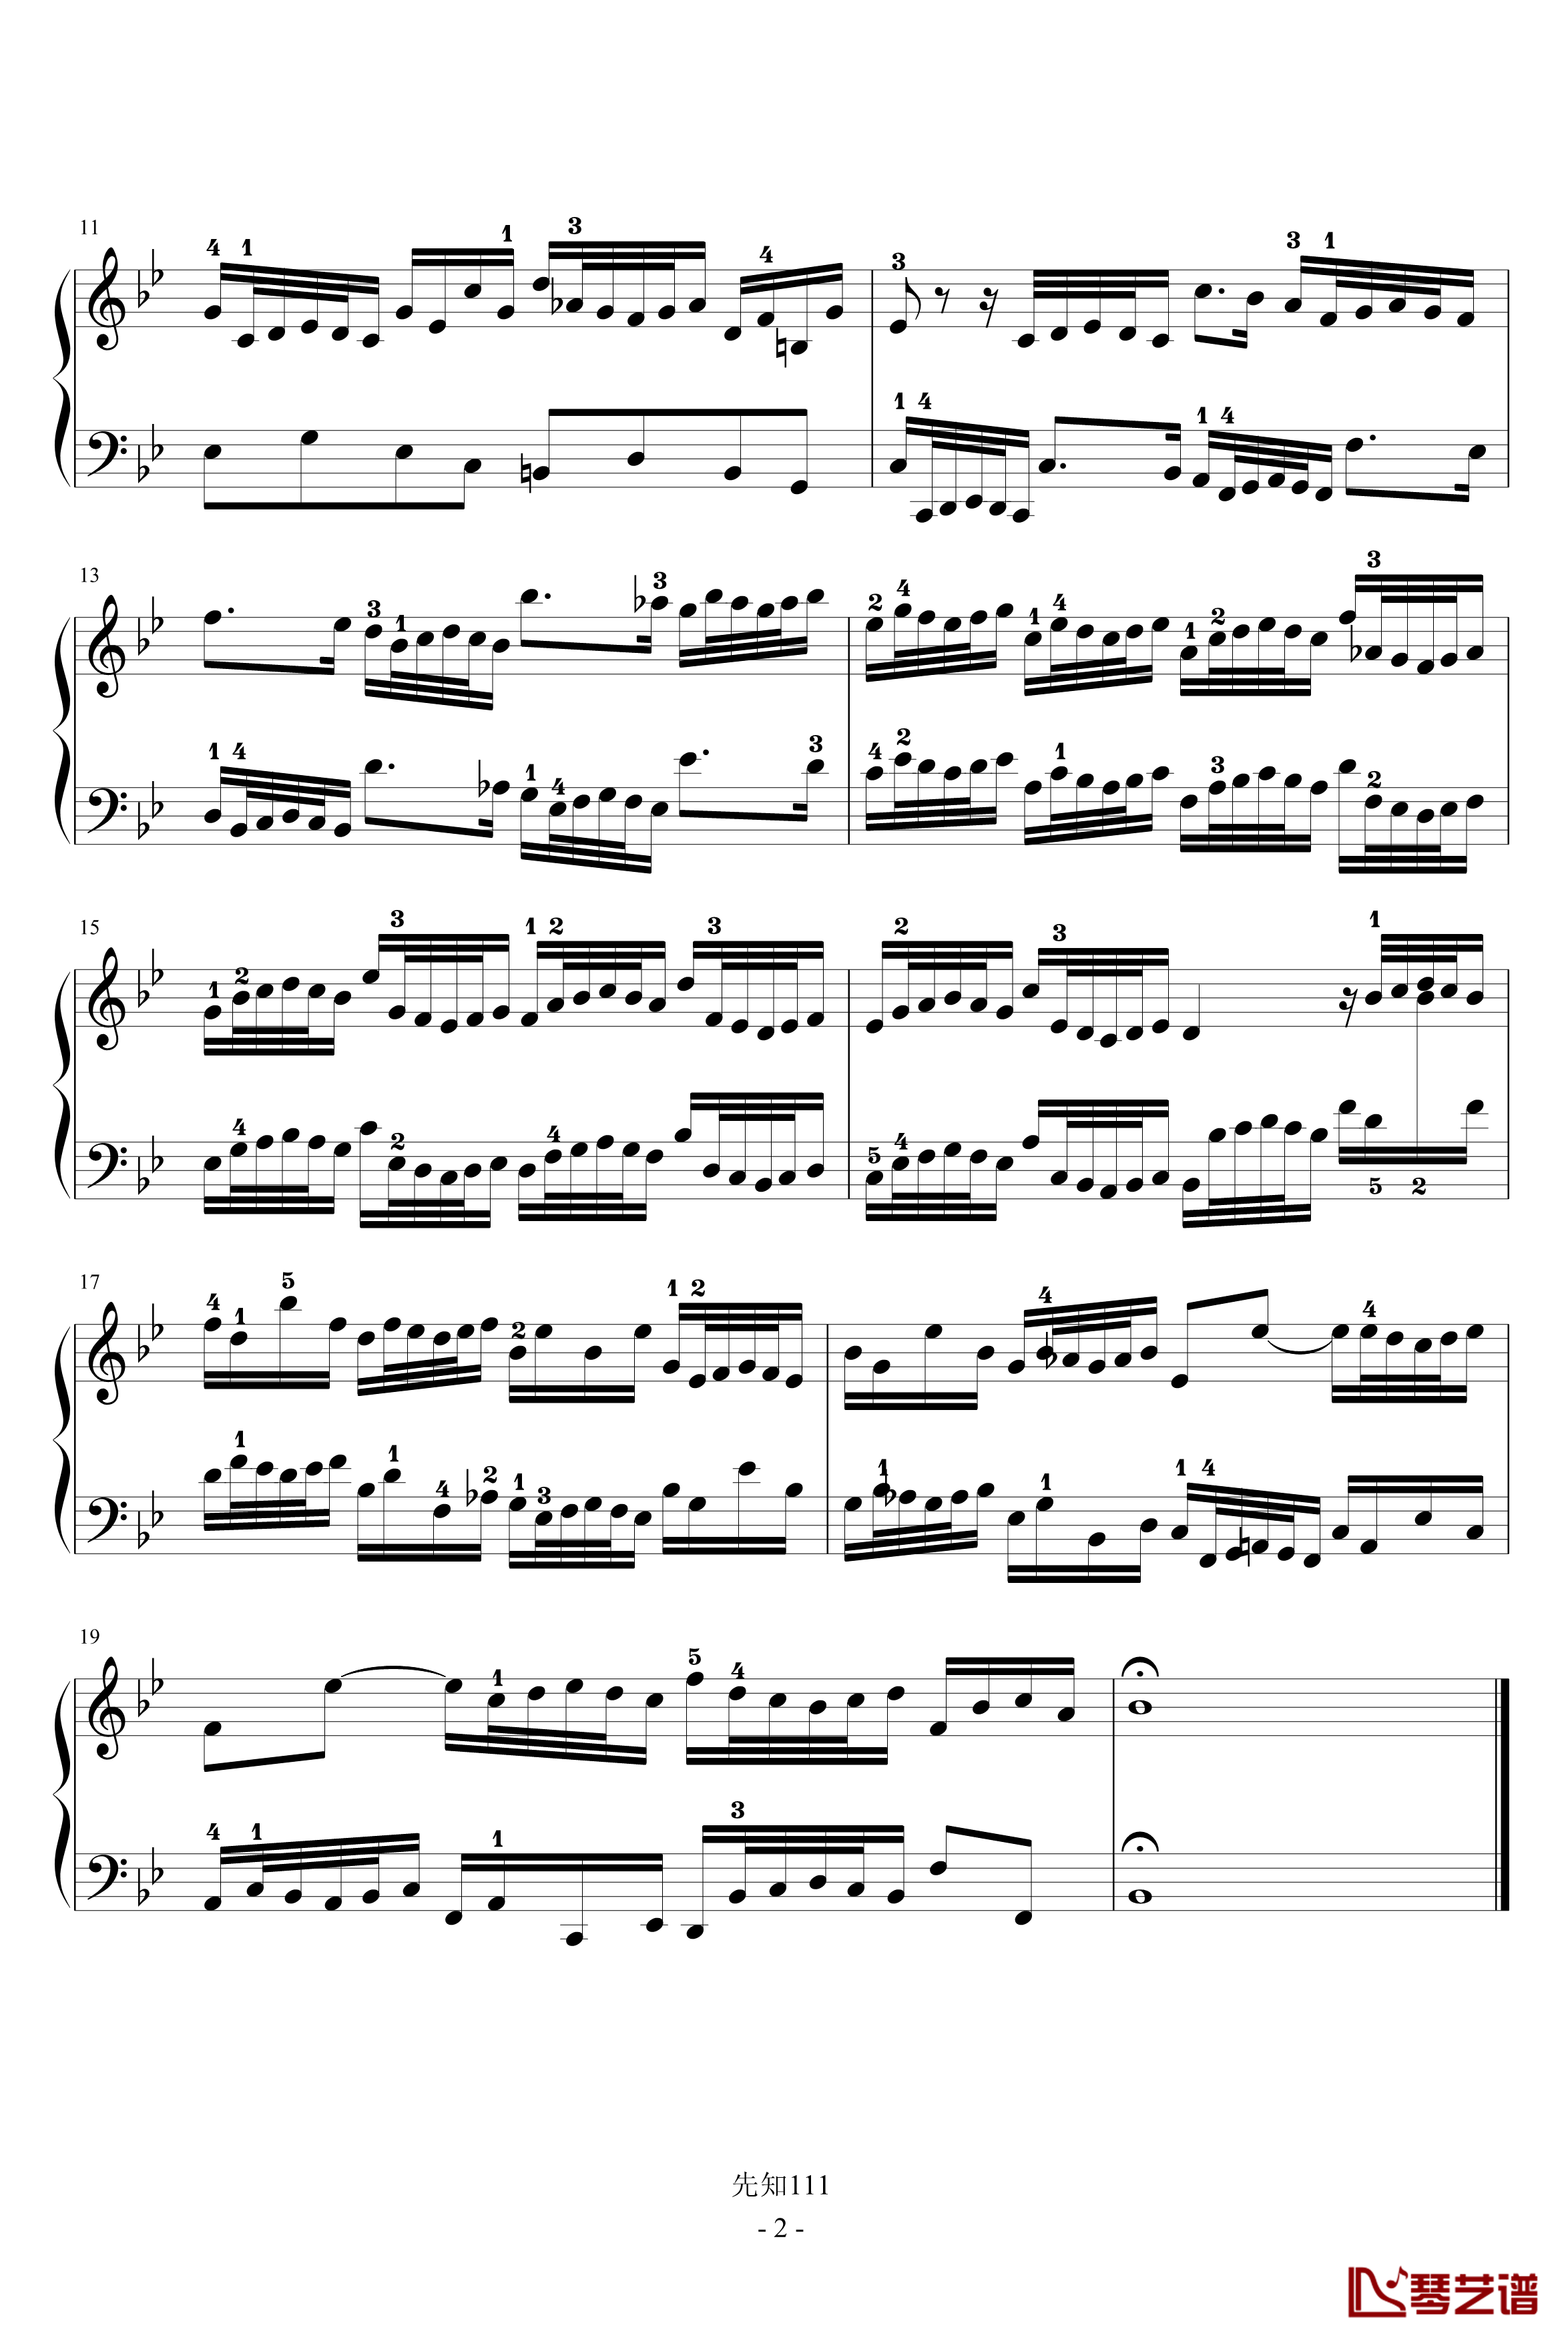 二部创意曲NO.14钢琴谱-有指法-巴赫-P.E.Bach2